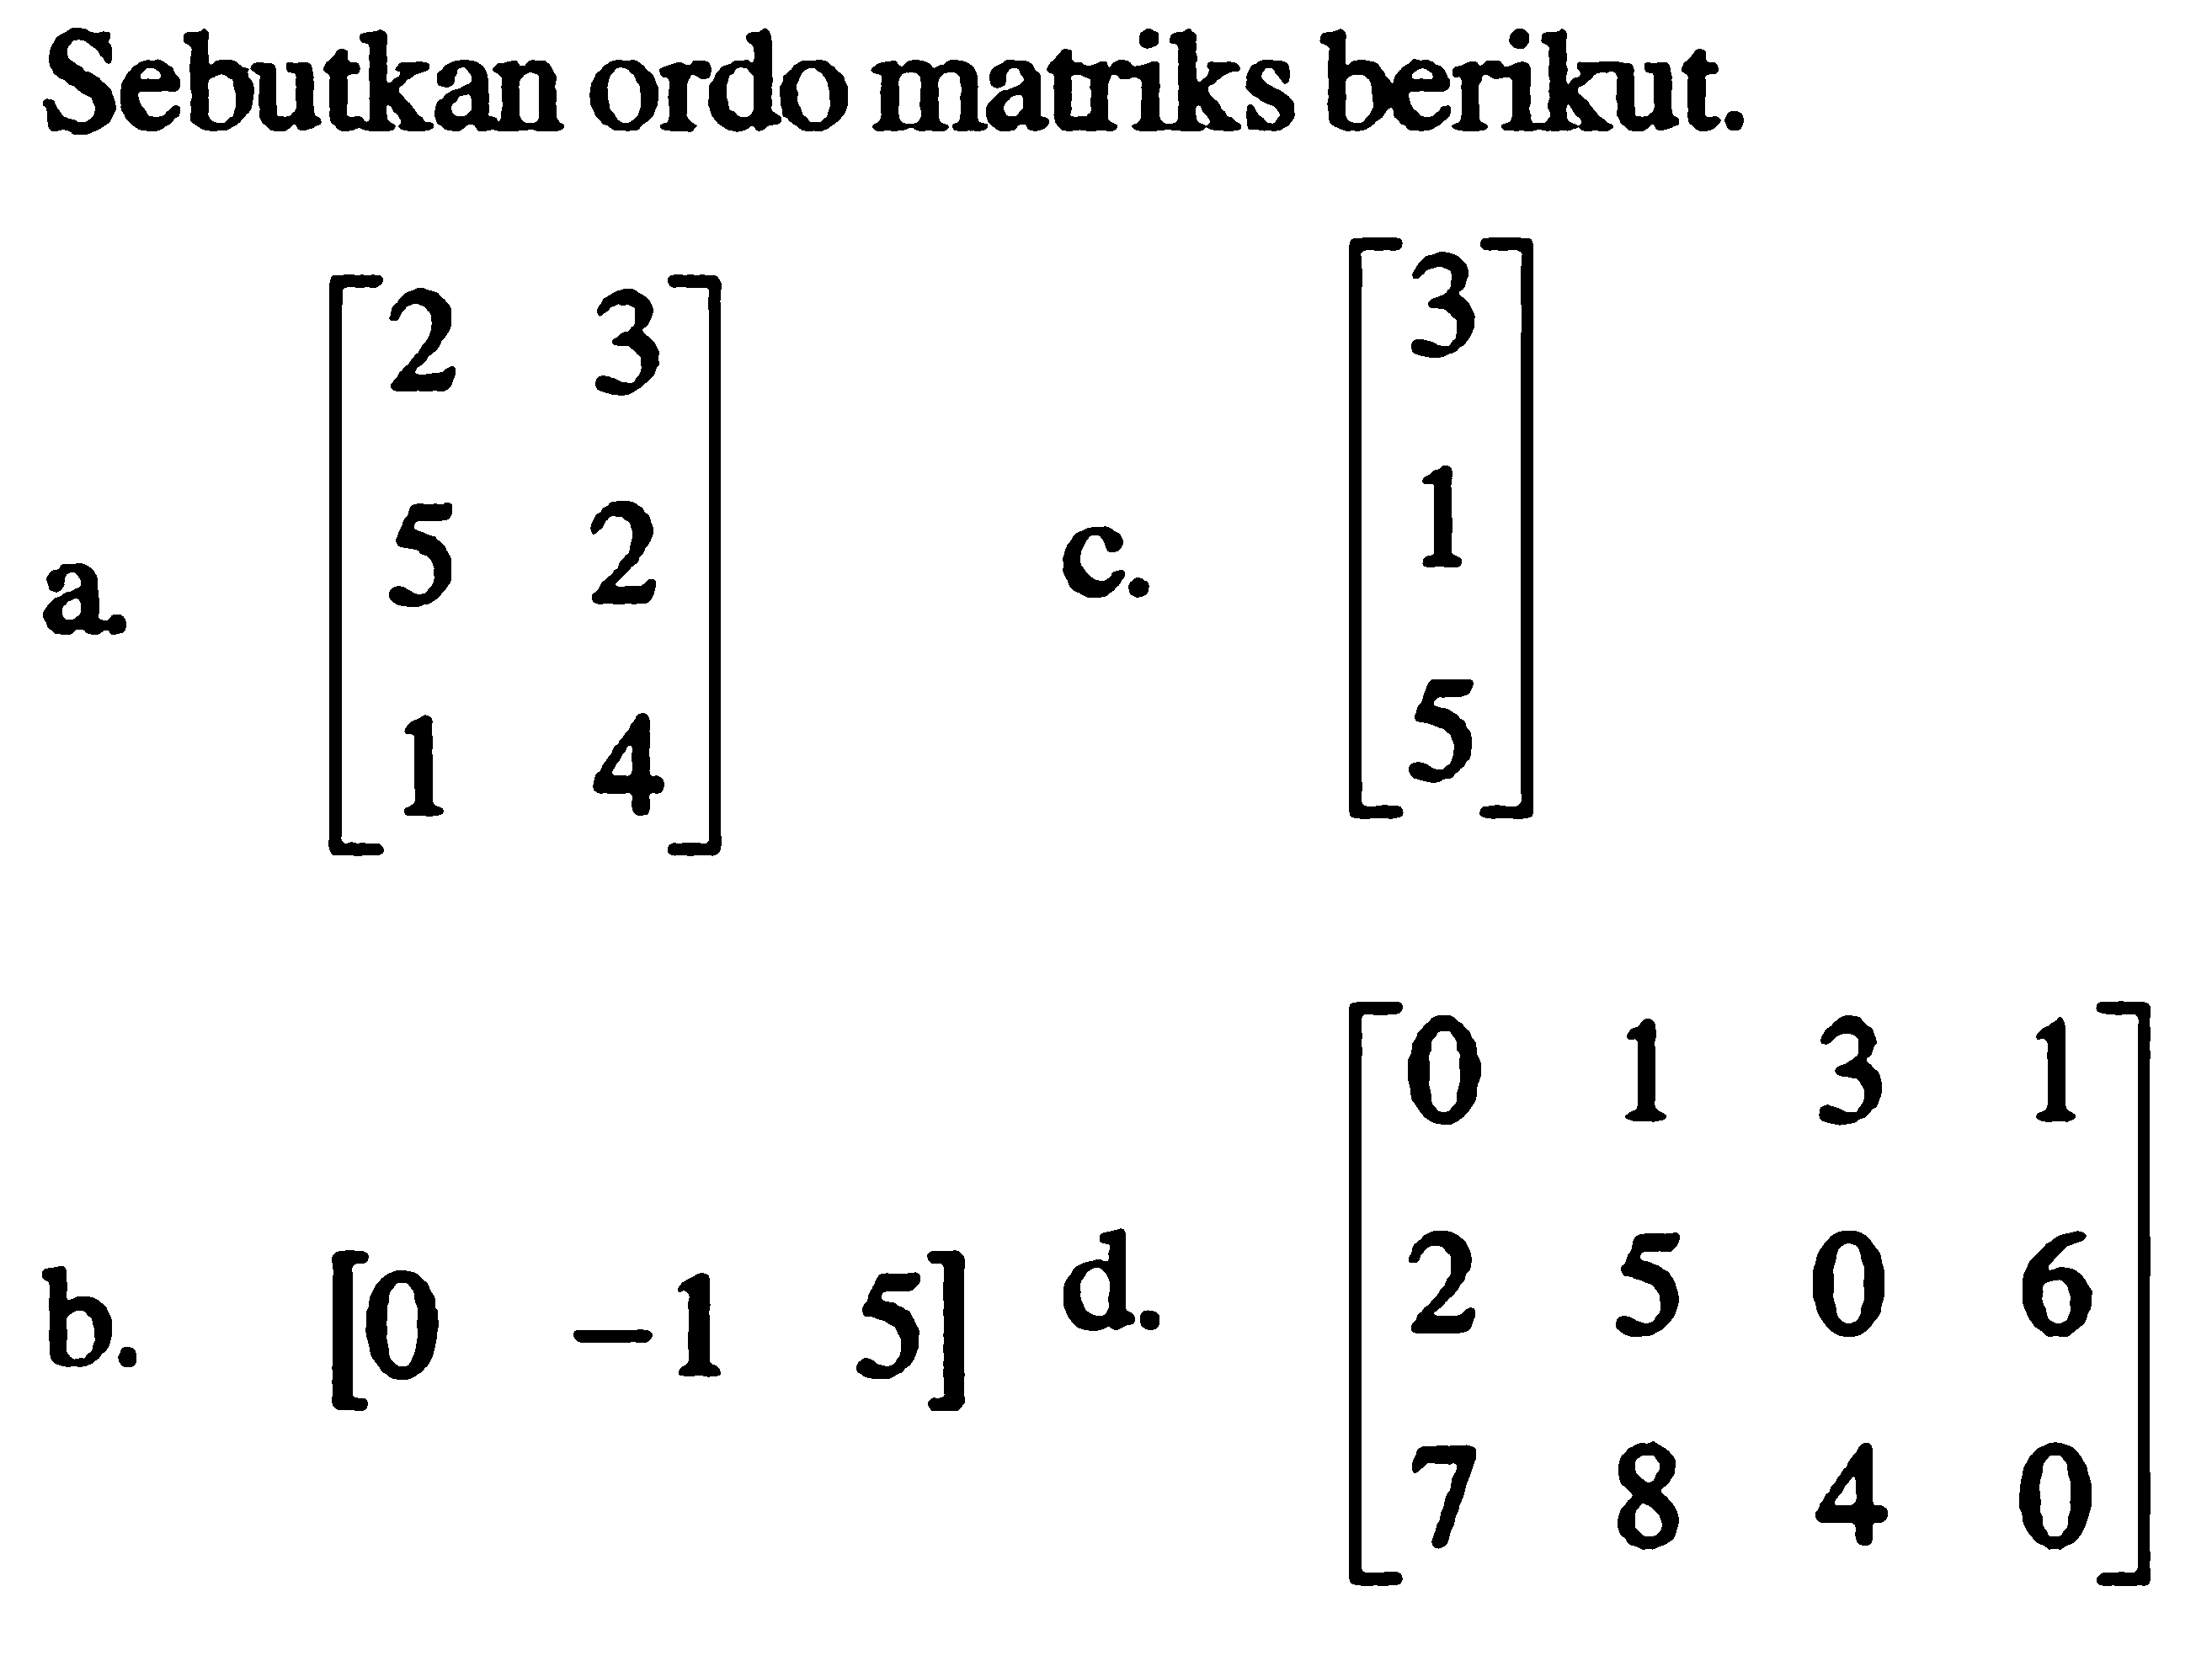 Sebutkan ordo matriks berikut. a. [2 3 5 2 1 4] c. [3 1 5] d. [0 1 3 1 2 5 0 6 7 8 4 0] b. [0 -1 5]